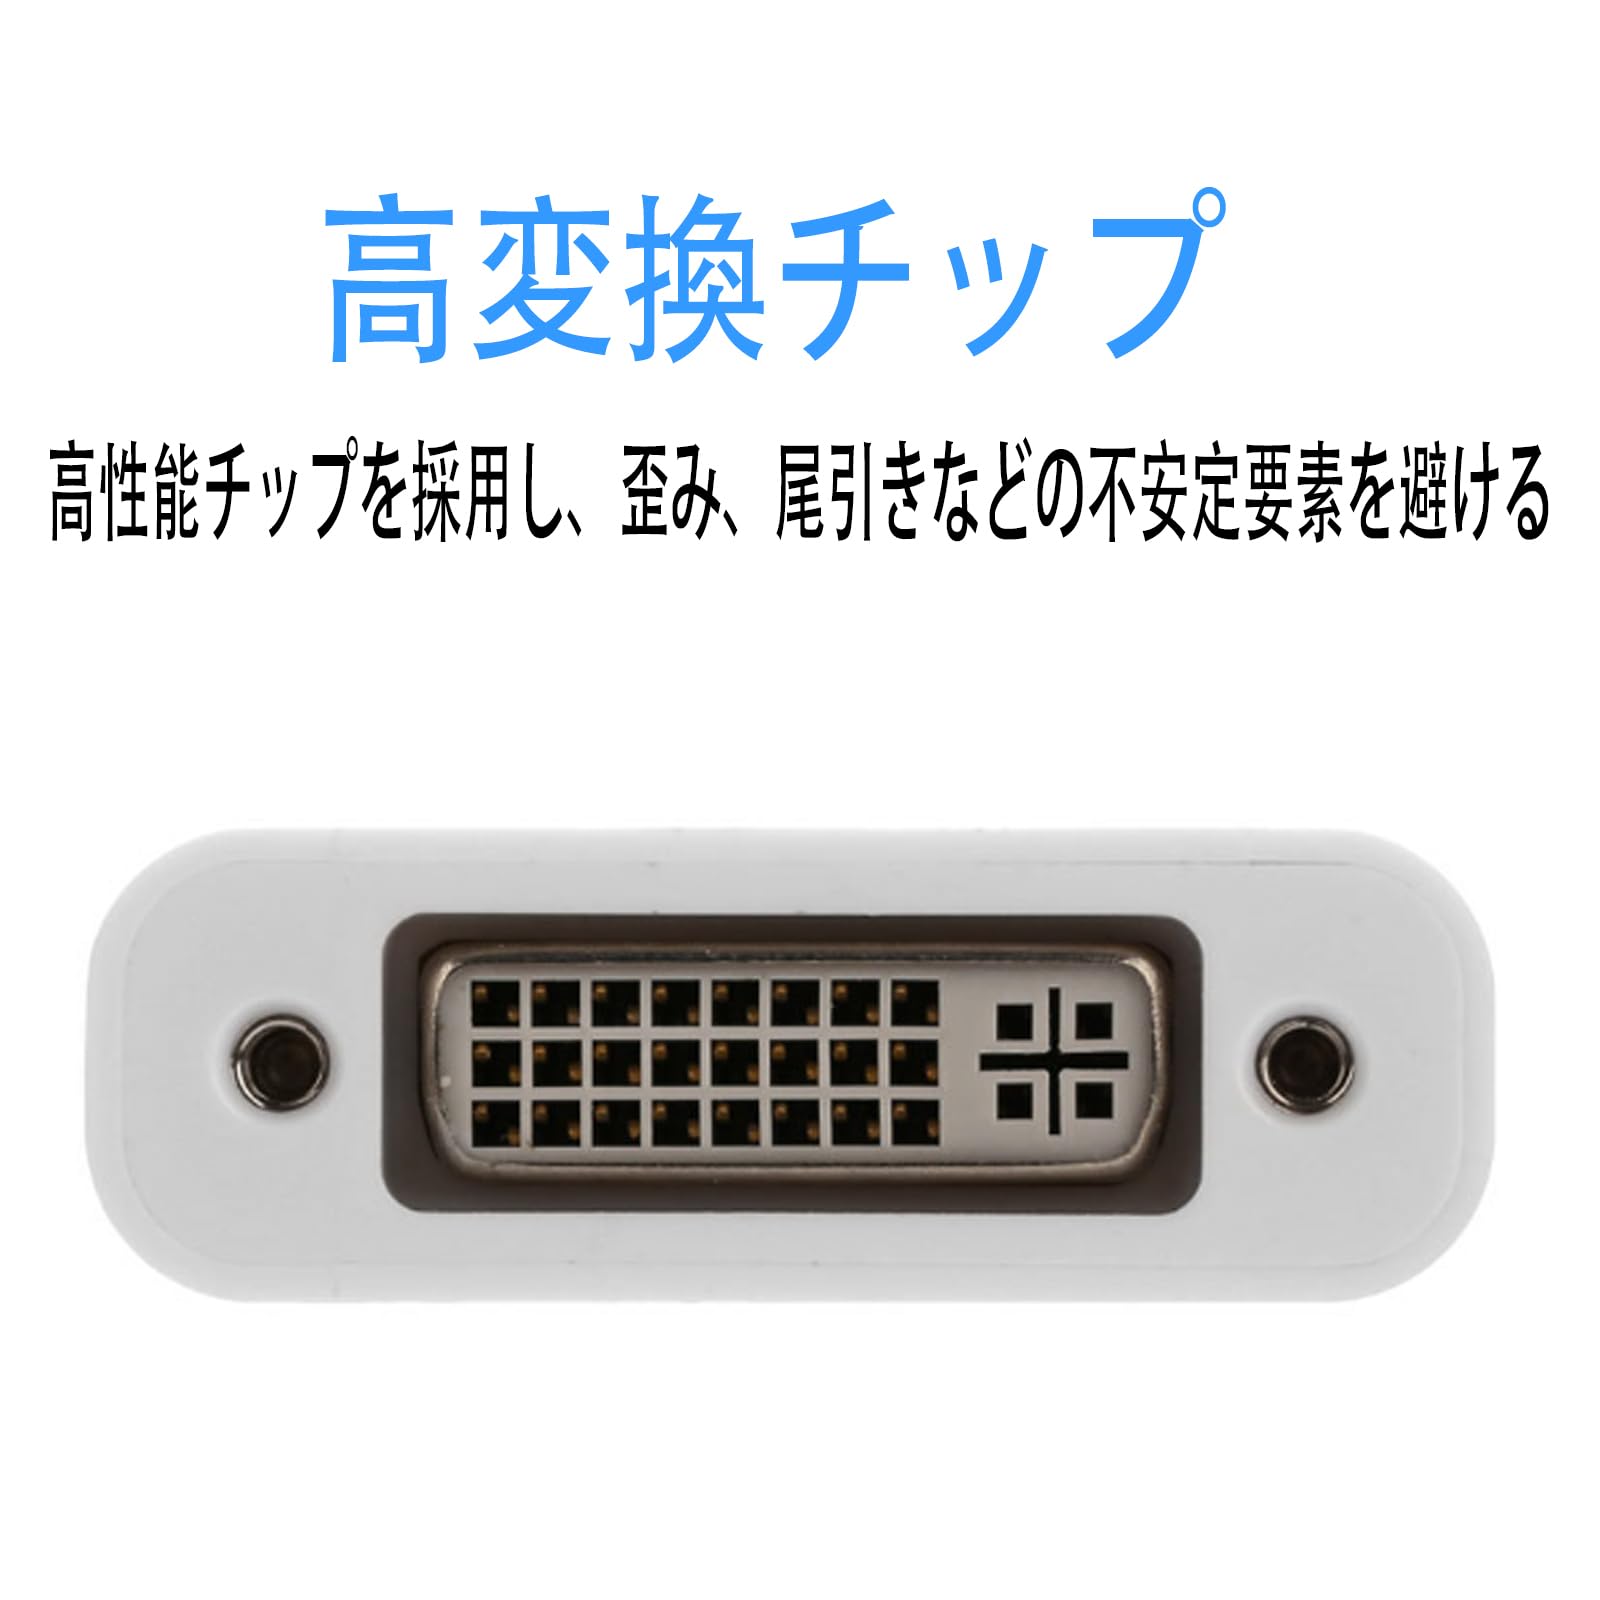 Mini DisplayPort - DVI24+5 изменение адаптер /mDP 1.2 - DVI-D видео изменение /1080p/ Mini дисплей порт -